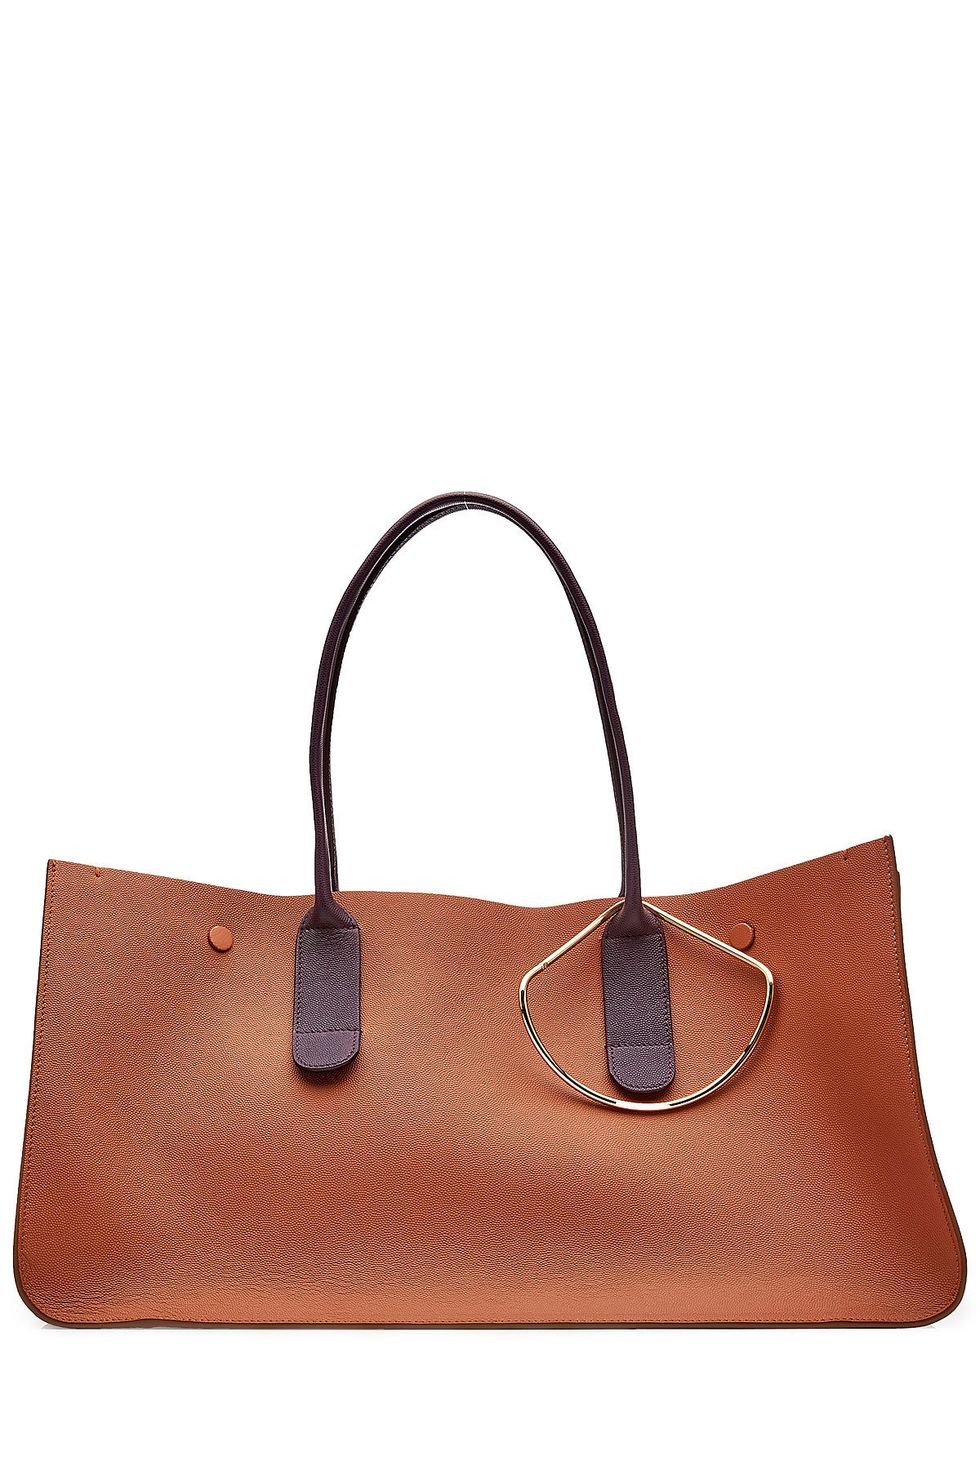 Handbag, Bag, Leather, Brown, Product, Fashion accessory, Tan, Shoulder bag, Tote bag, Beige, 